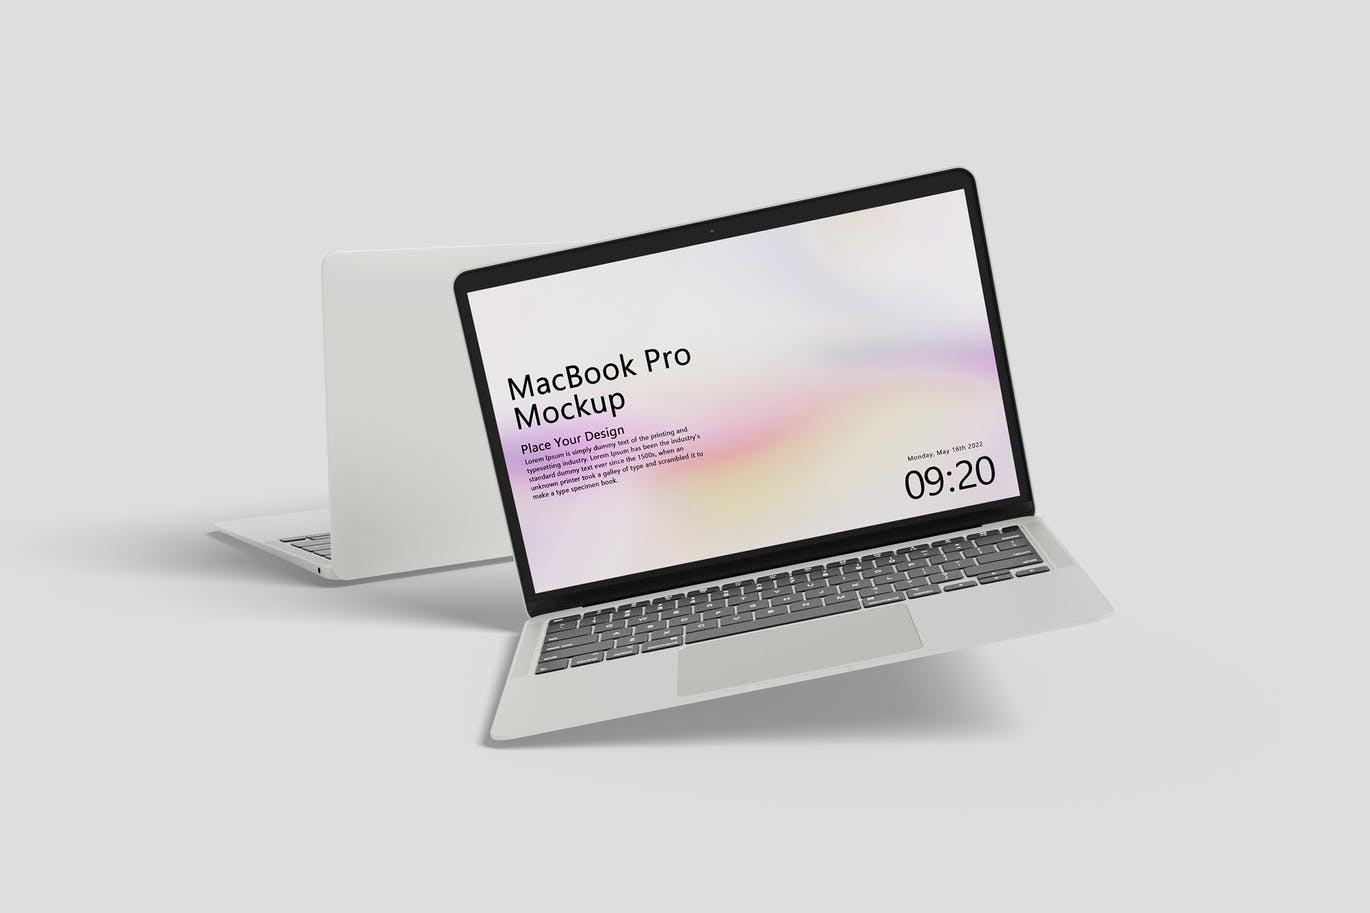 MacBook Pro苹果电脑设备样机 (PSD)